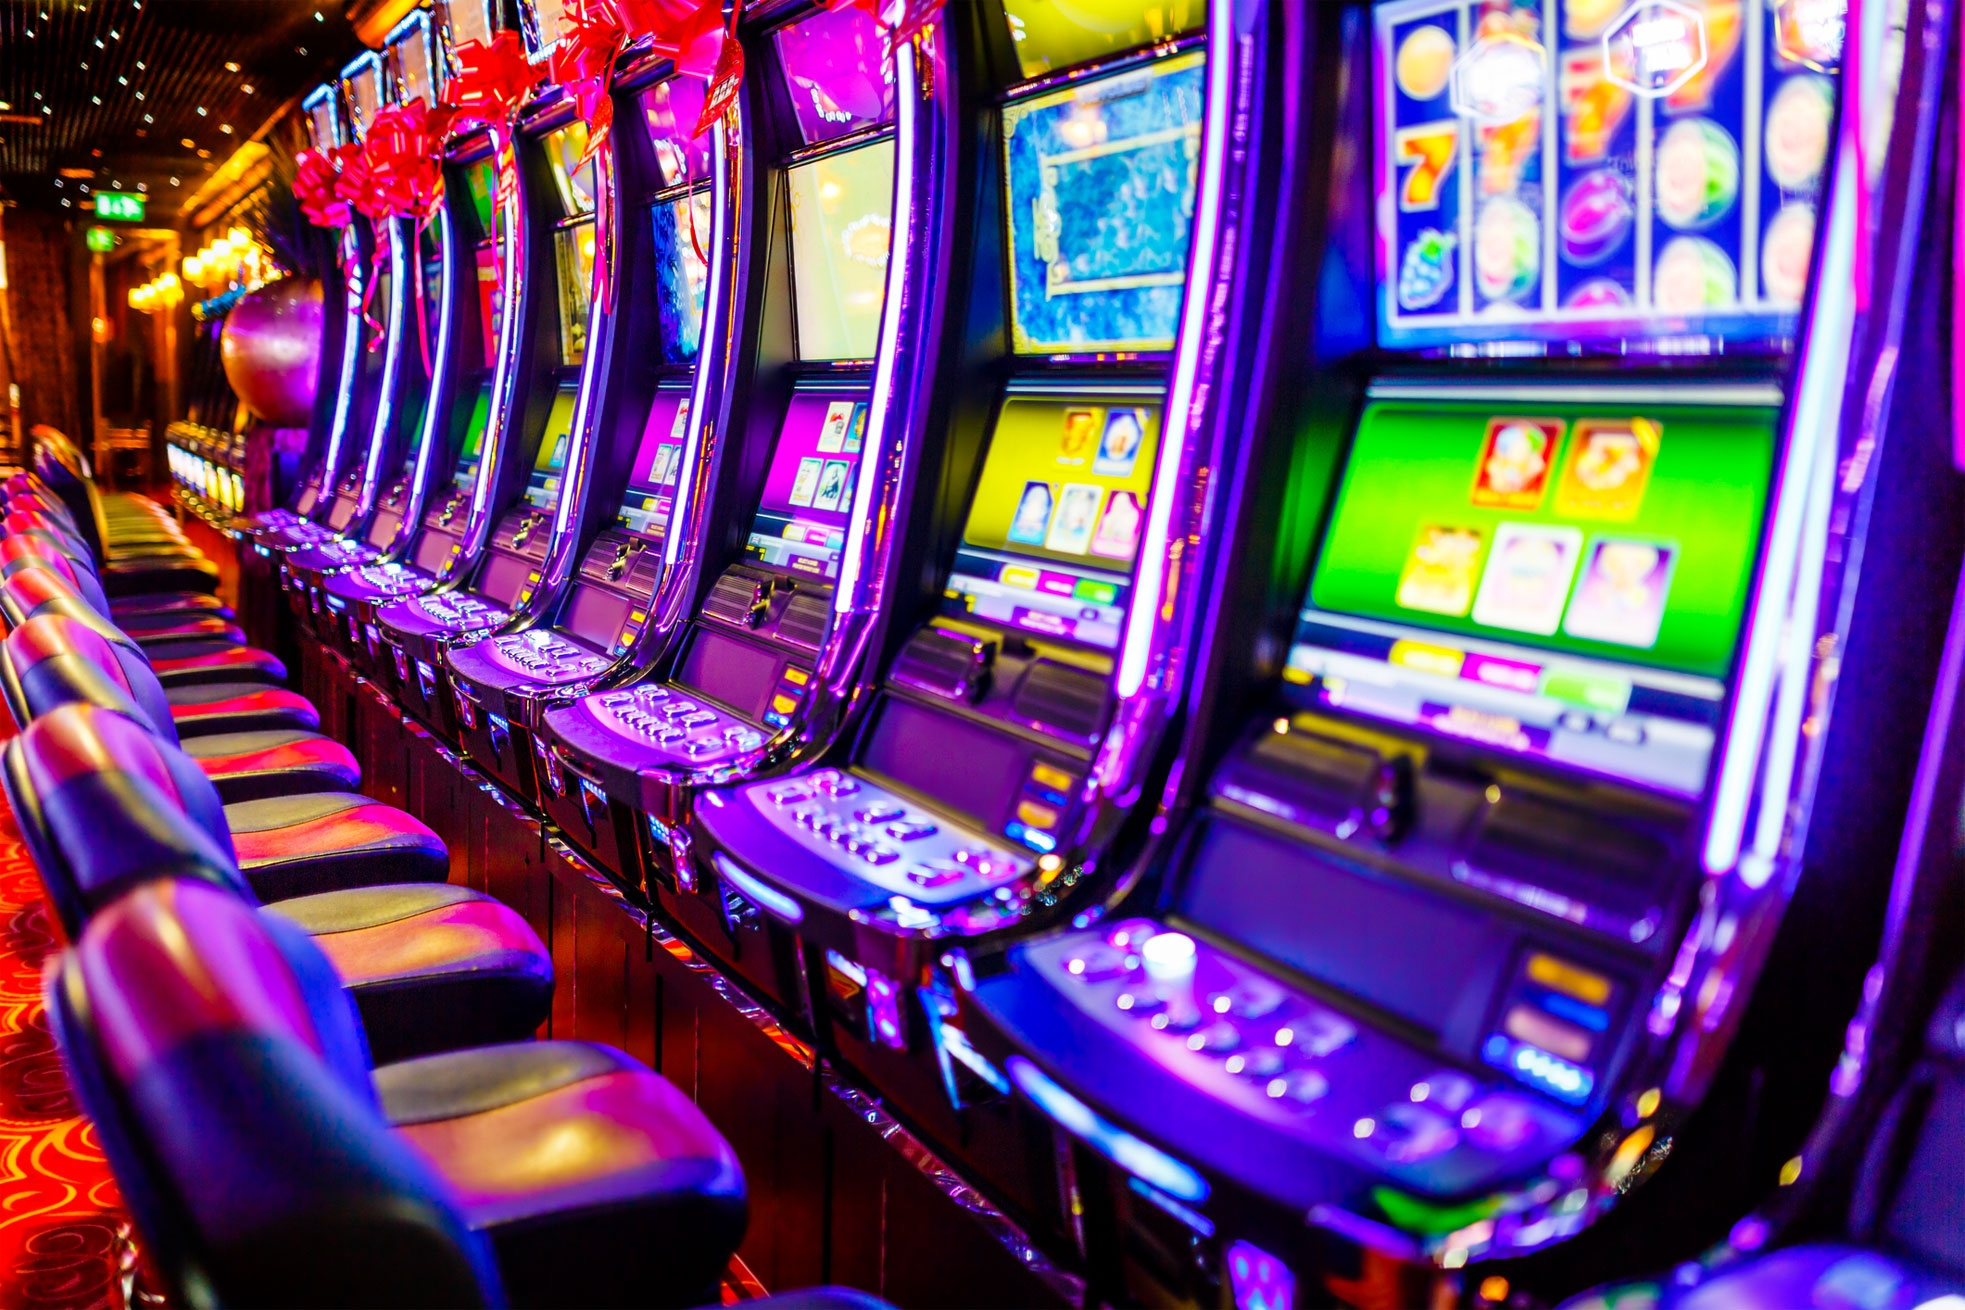 Mega Spin Slots Gambling